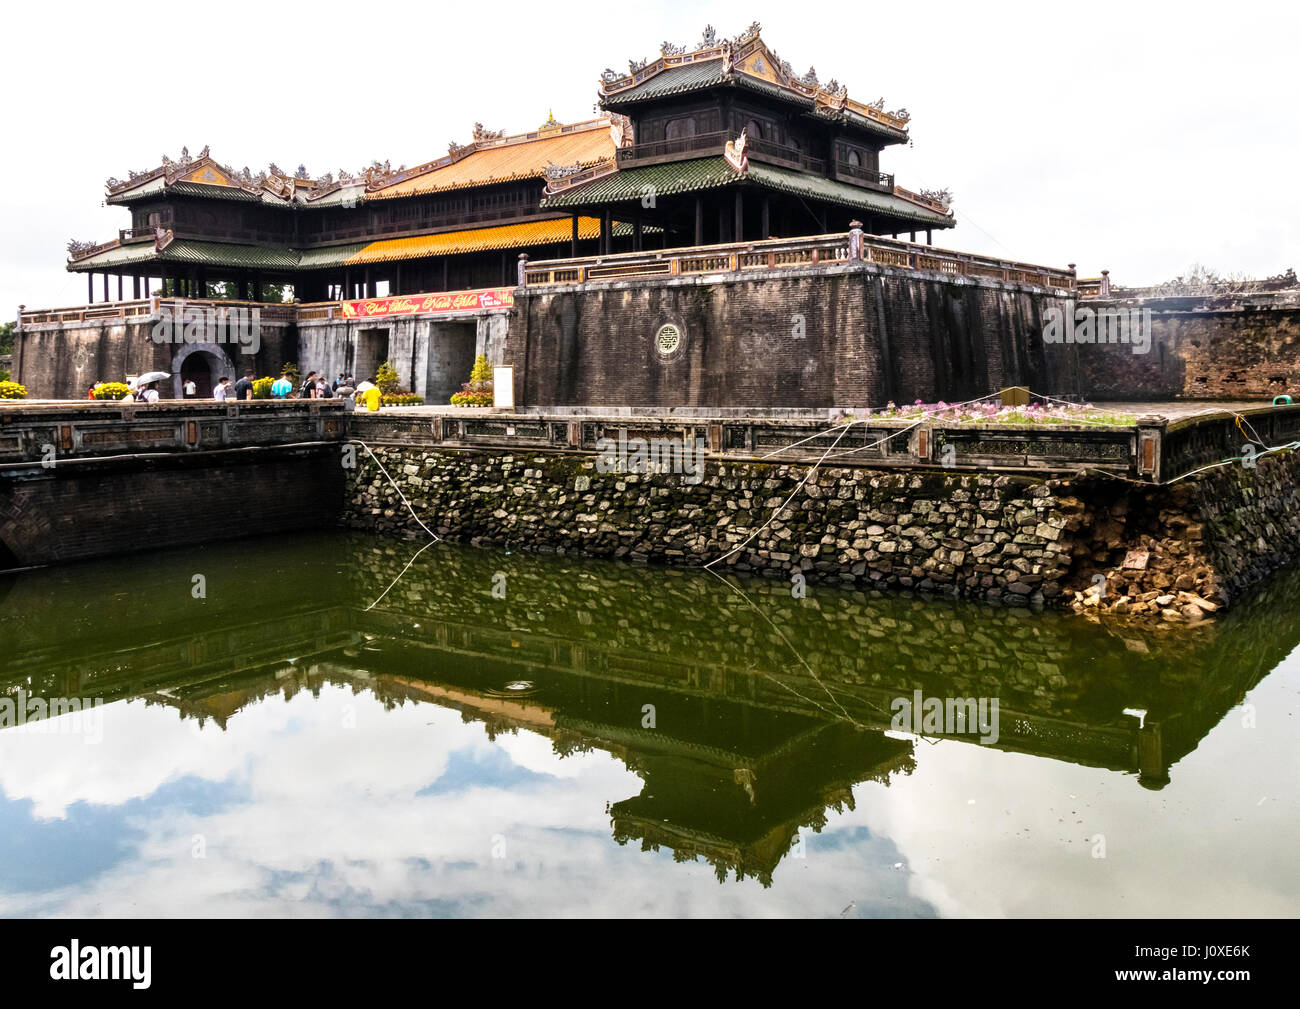 L'enceinte impériale abrite la résidence de l'empereur Vietnamien, temples et palais, dans la ville impériale de Hue Banque D'Images